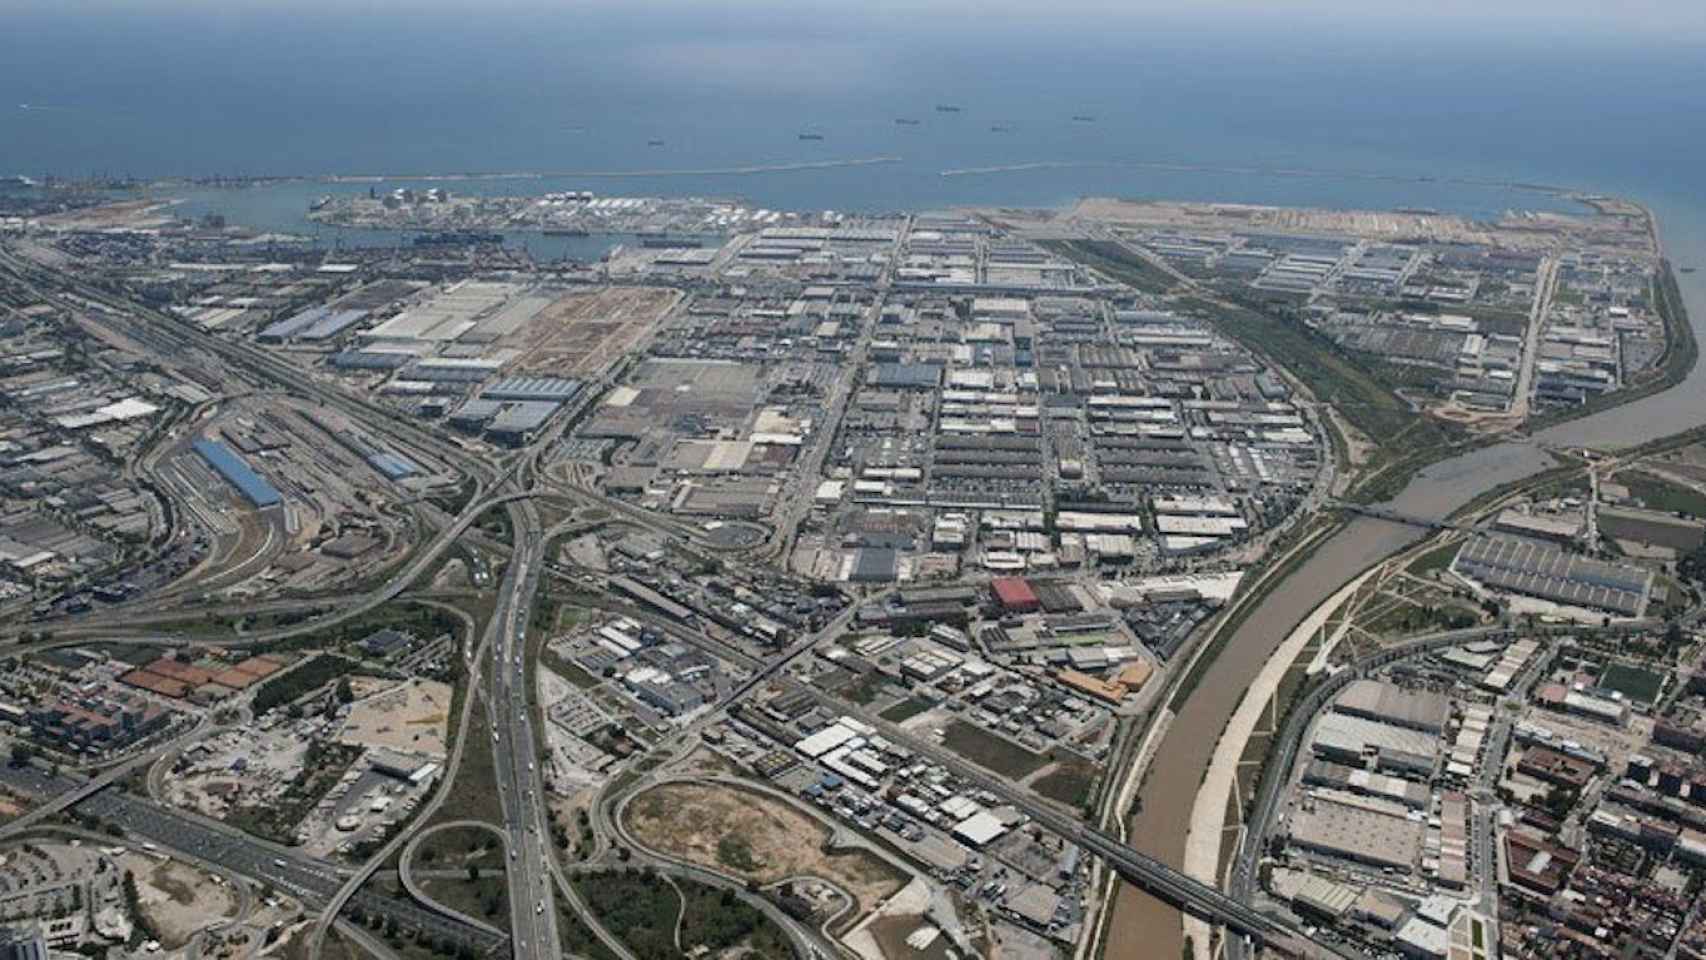 Vista aérea del polígono industrial de la Zona Franca / CG